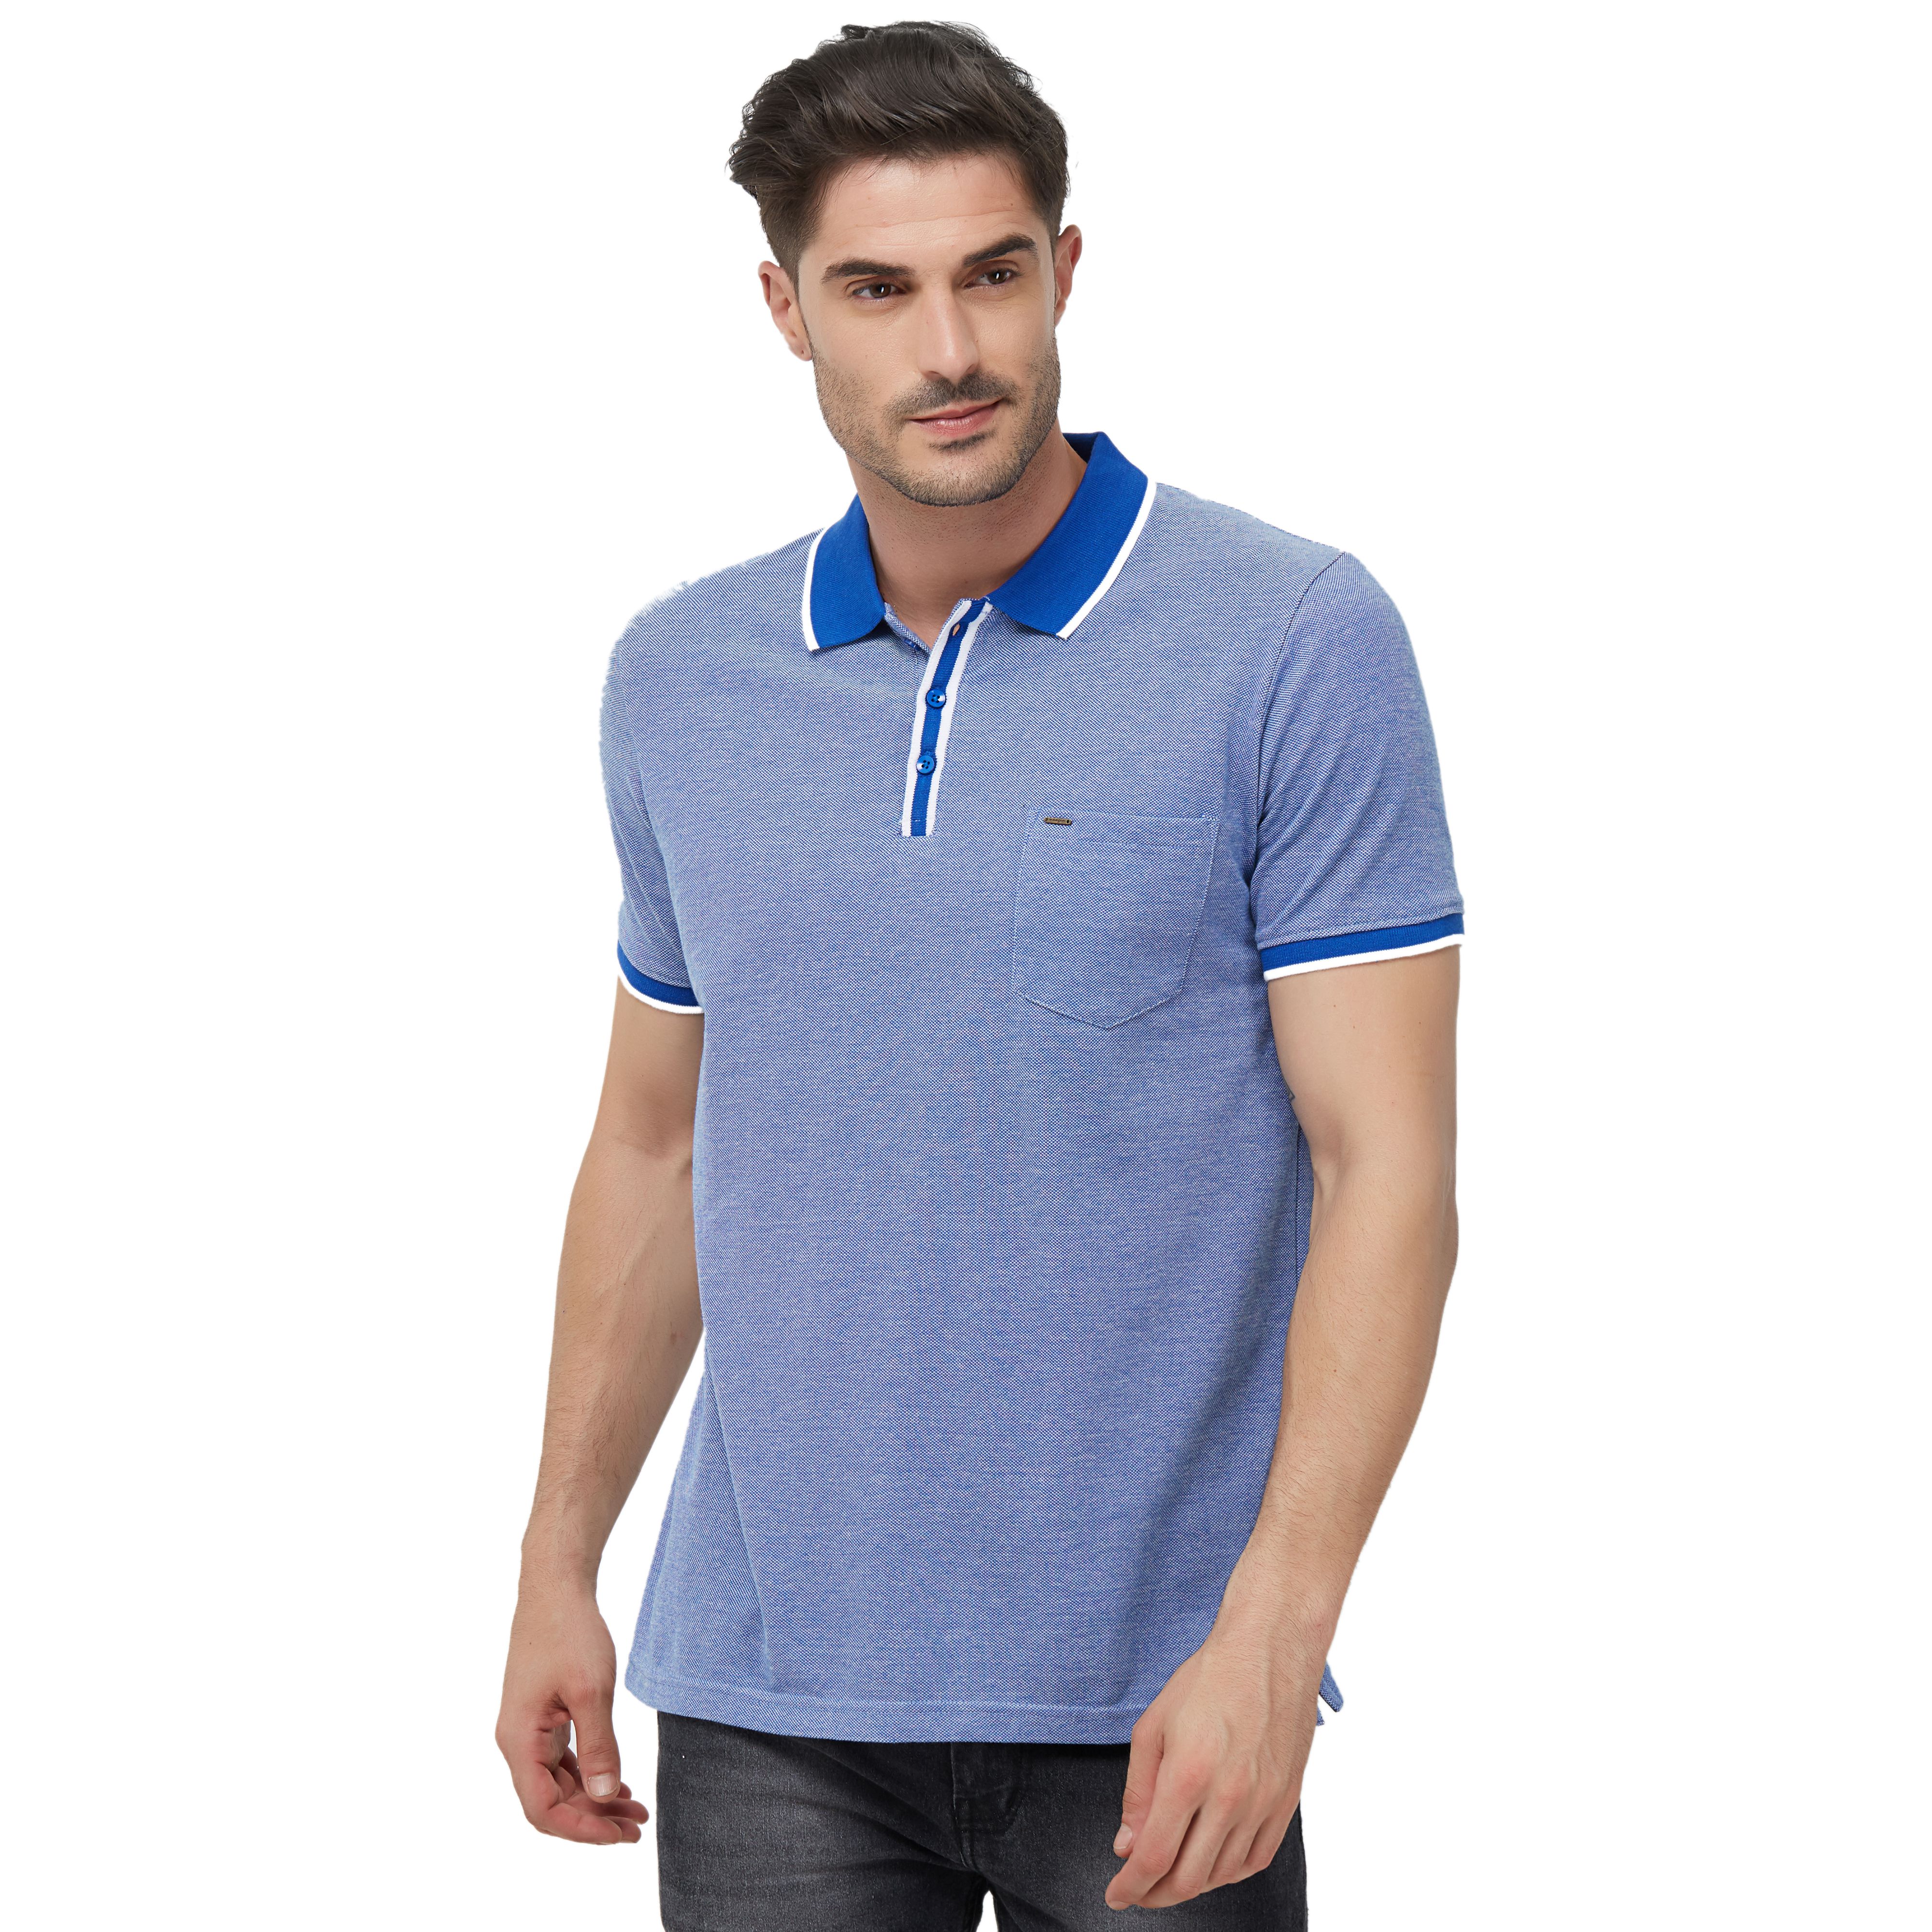 NEXGEN CLUB Cotton Blend Blue Striper T-Shirt - Buy NEXGEN CLUB Cotton ...